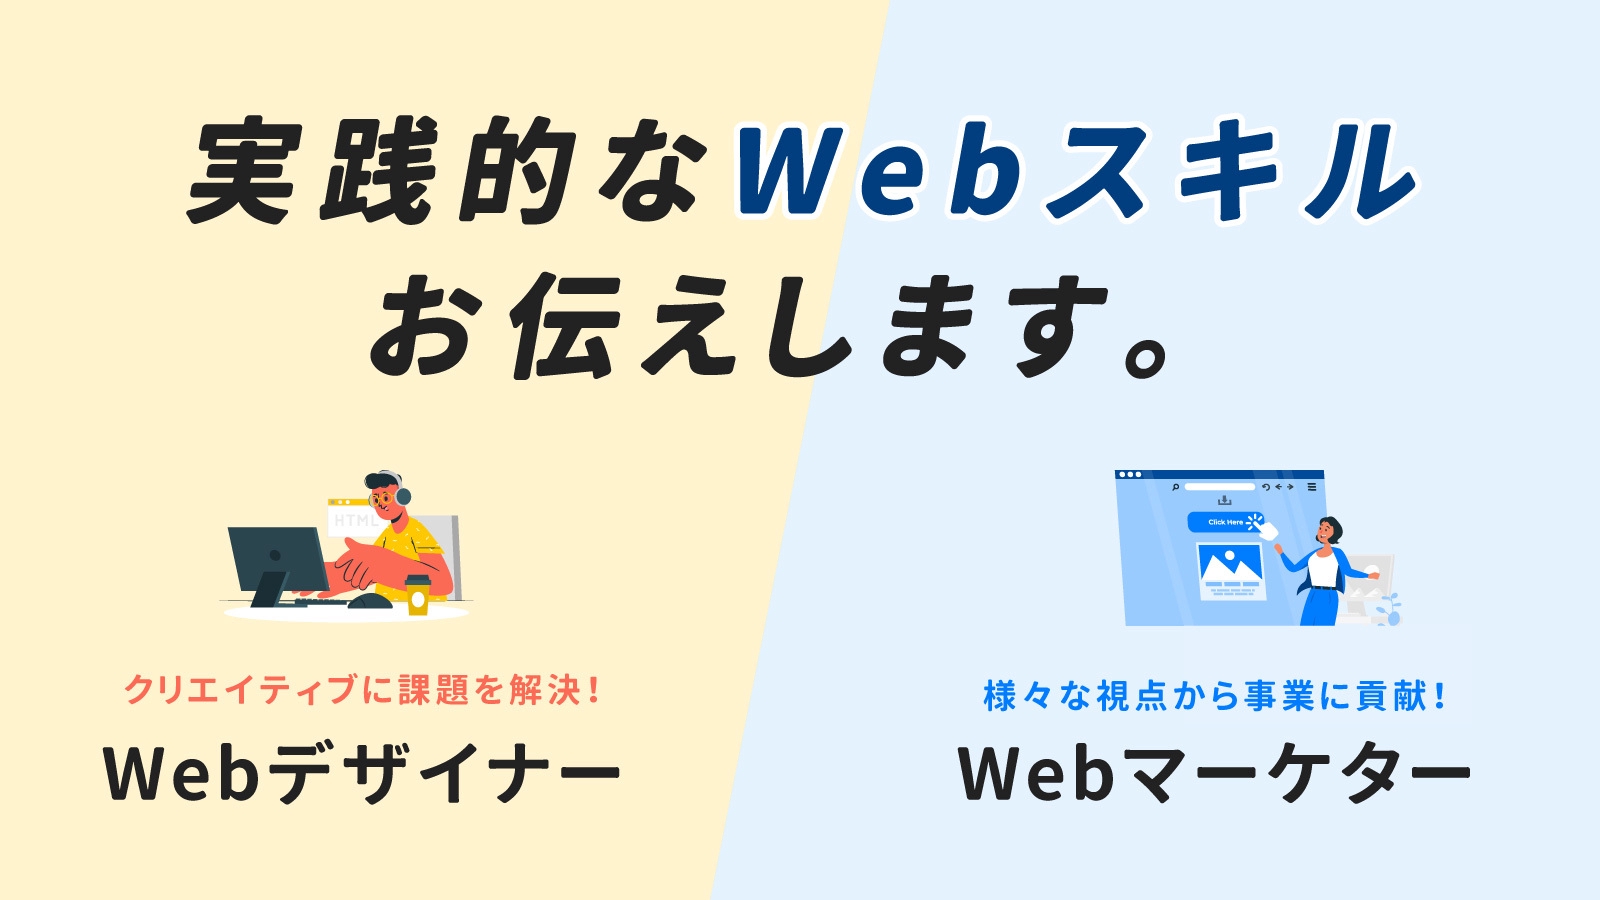 【プロの技をお伝えします】Webデザイン・Webマーケティングの習得を全力でサポート！転職・Web担当実務・副業などのお悩みを一緒に解決しましょう！-image1